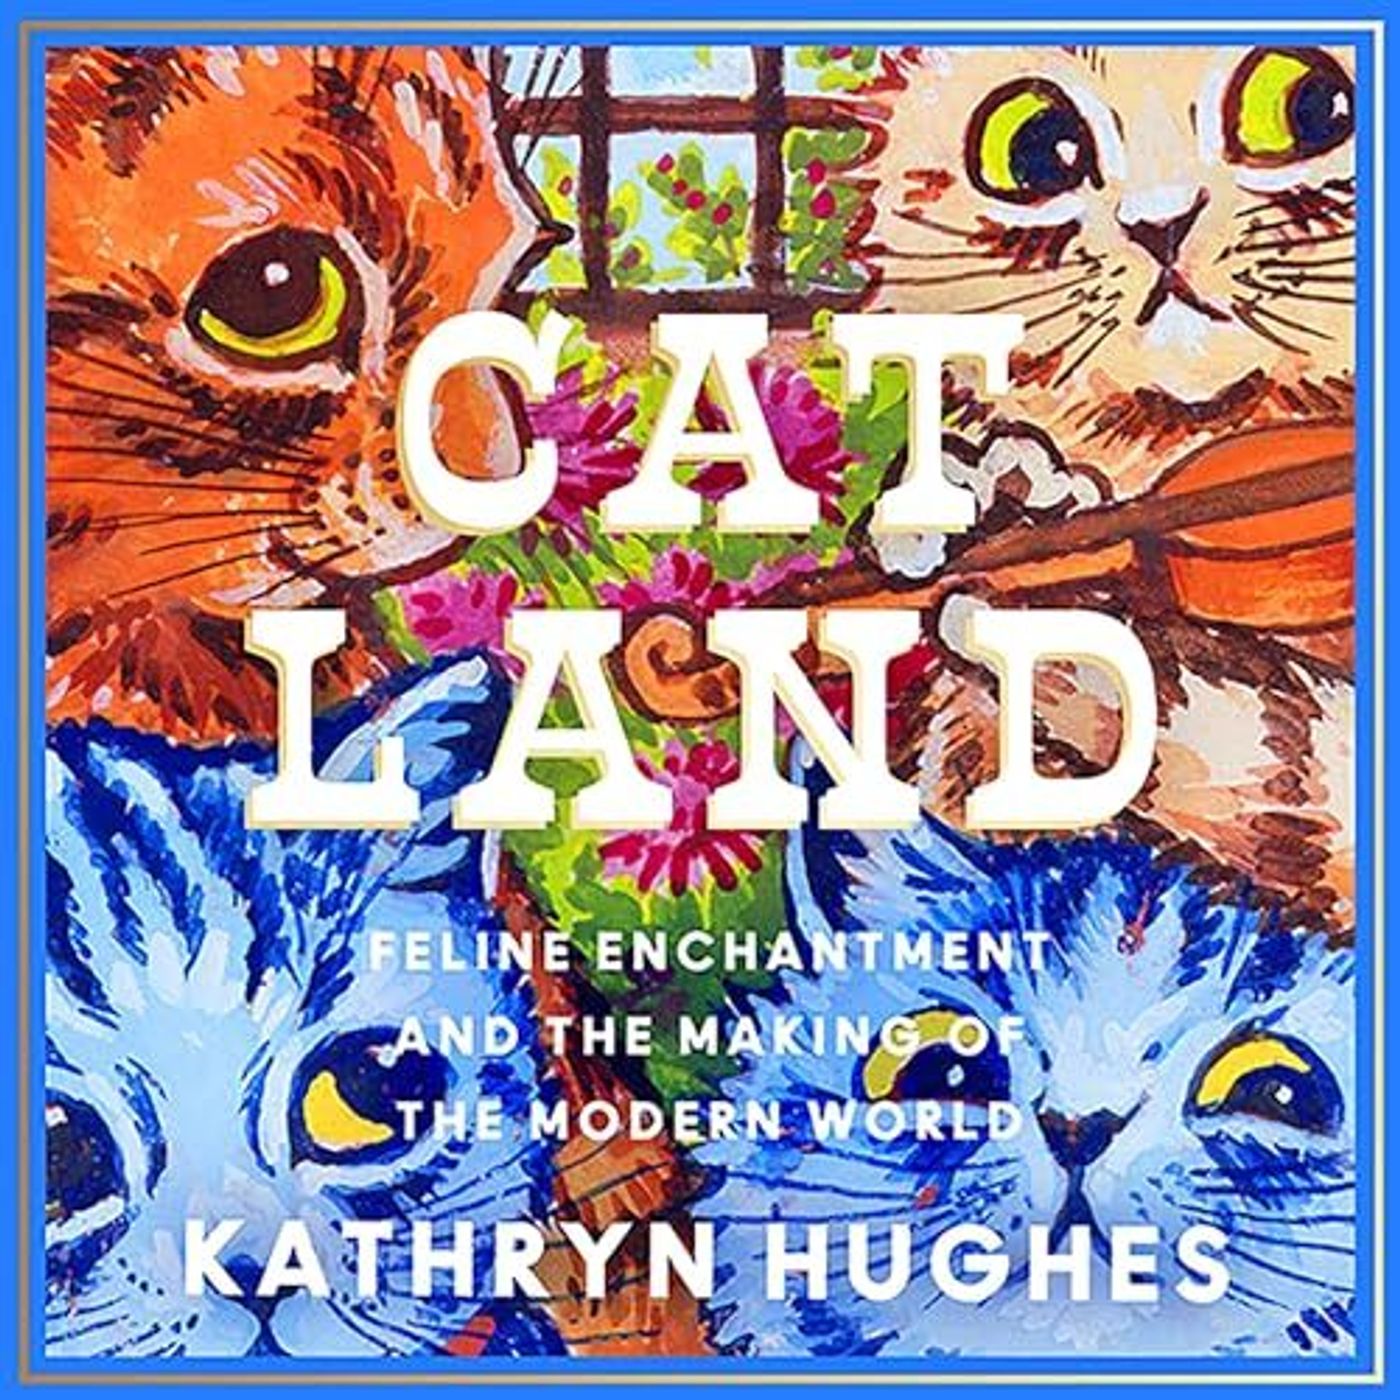 The Book Club: Kathryn Hughes